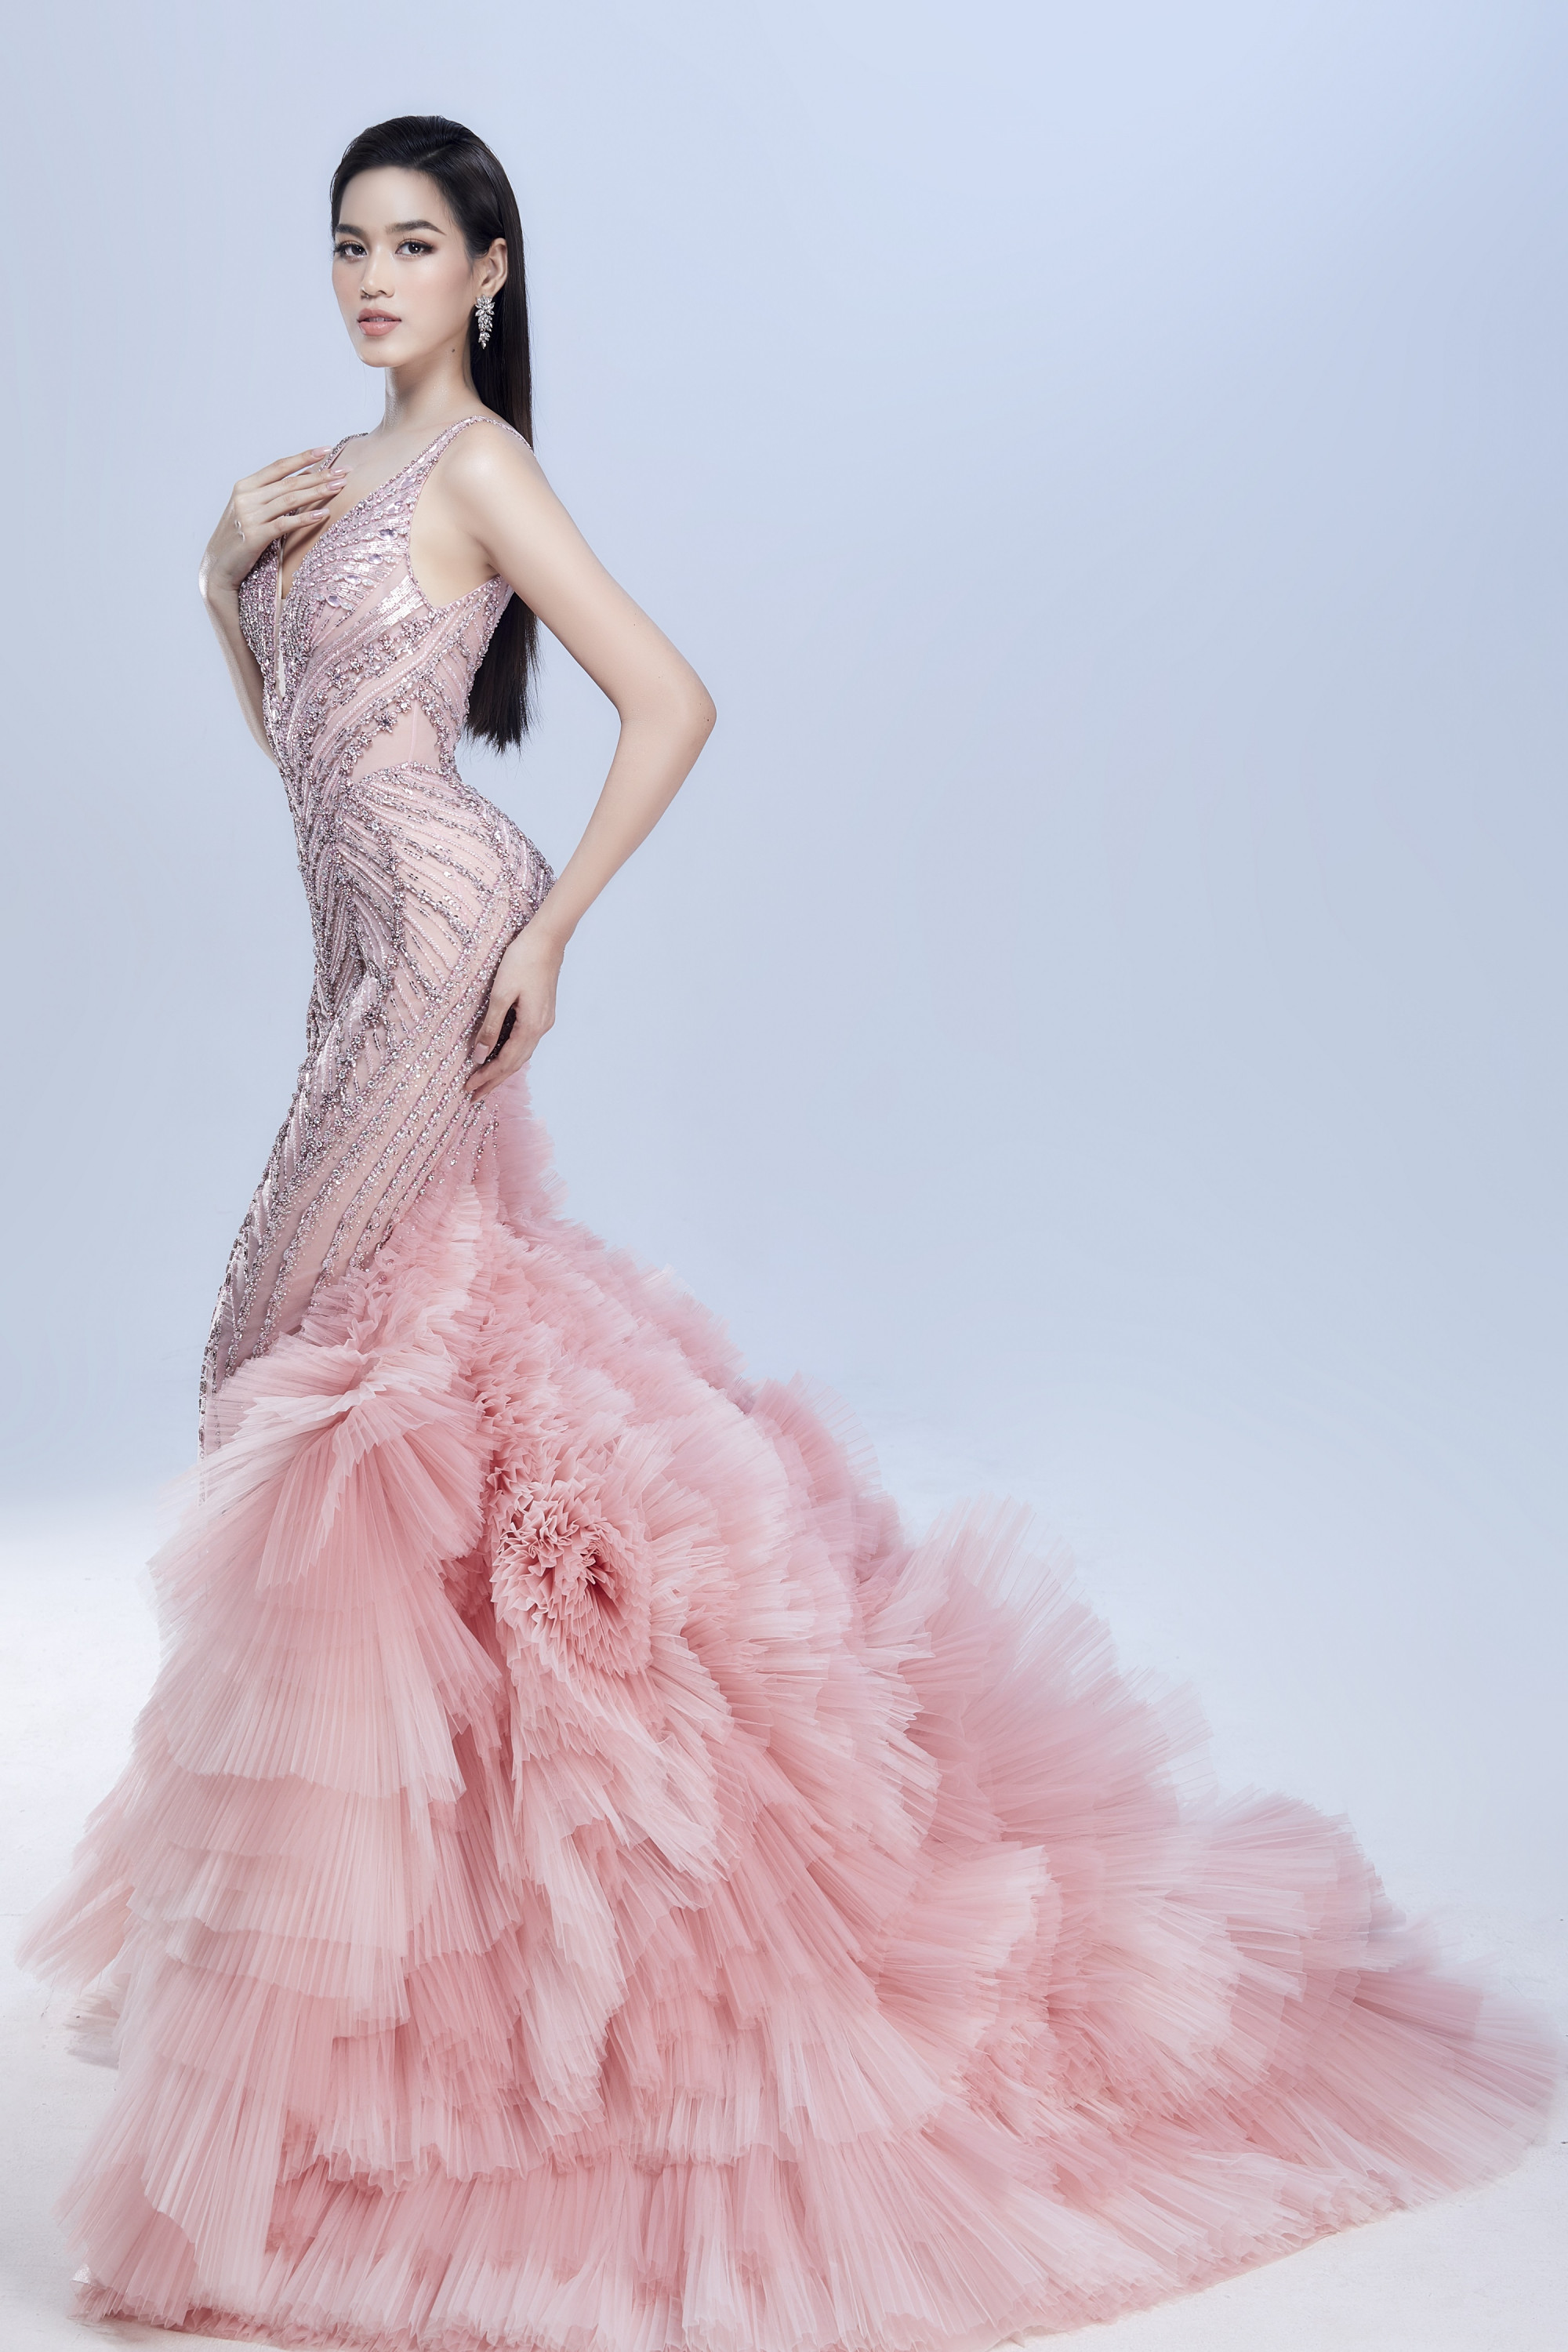 Bộ váy thứ hai có tông hồng ngọt ngào, tôn lên làn da trắng của Hoa hậu Việt Nam 2020. Phom đuôi cá 